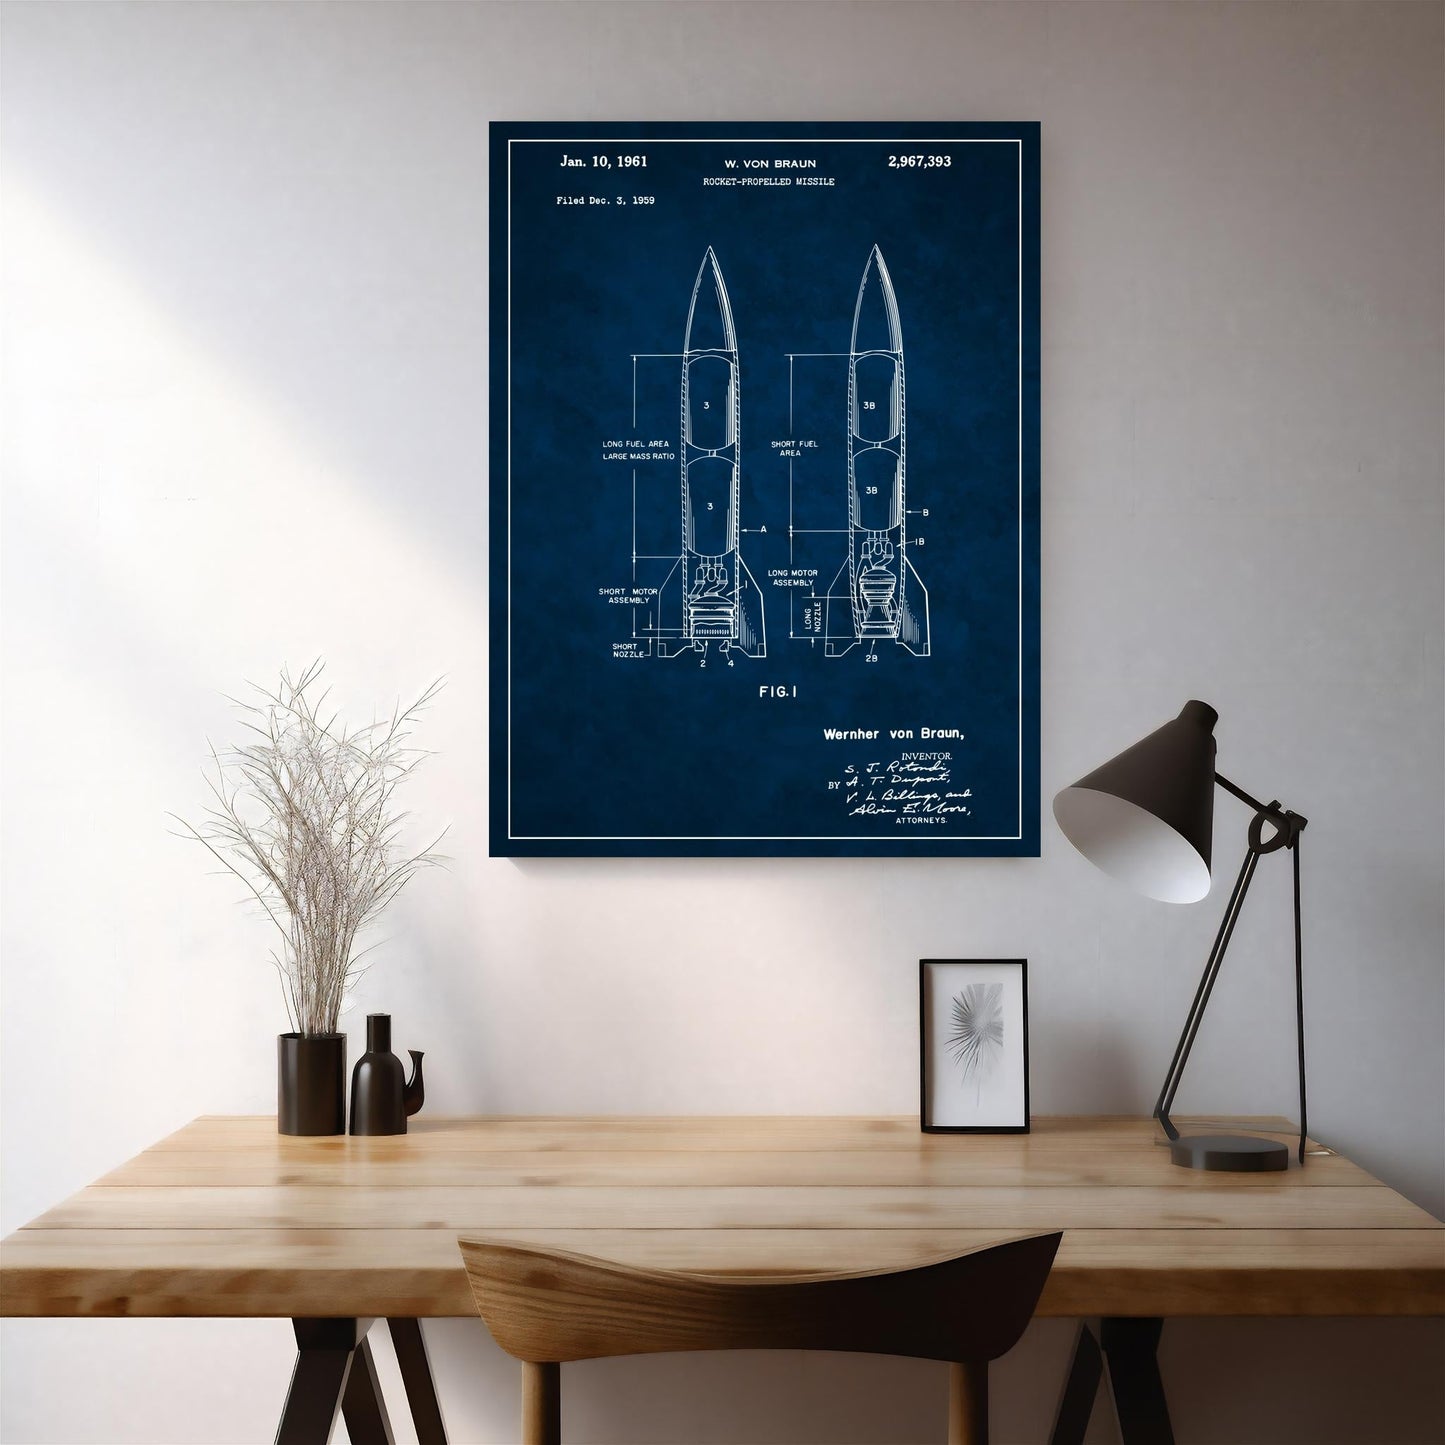 Patent 2967393 - Rocket-Propelled Missile by Wernher von Braun - 1961 - Atka Inspirations